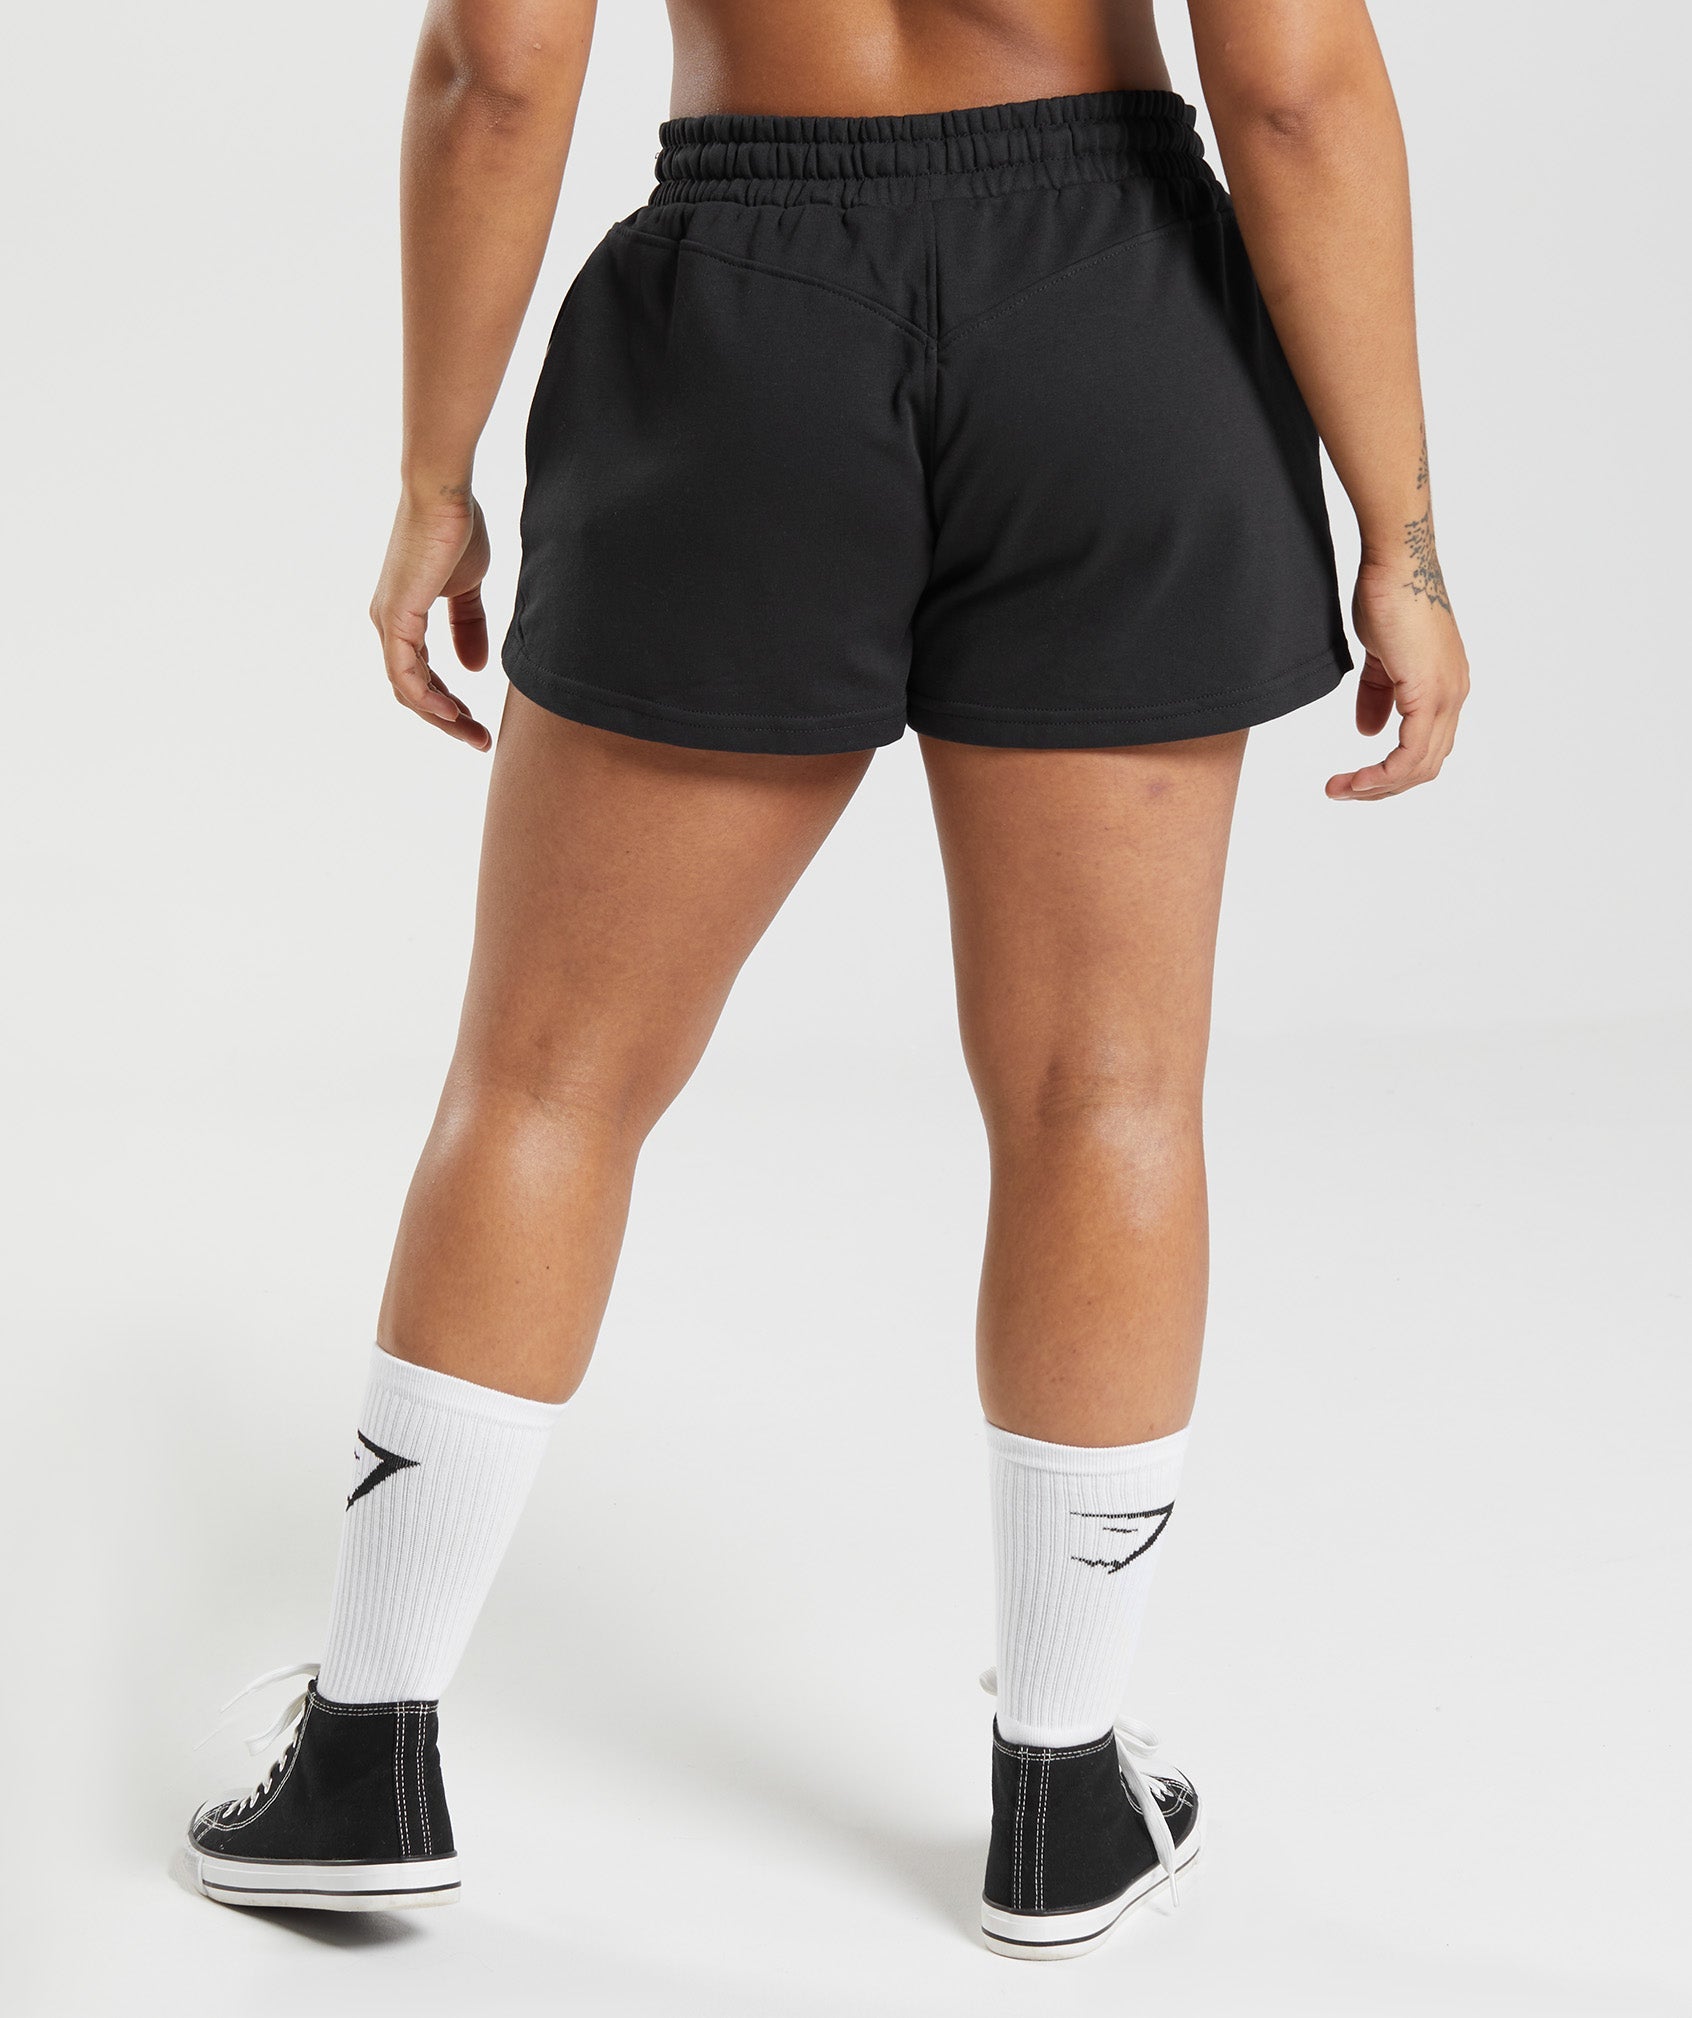 LEGACY Athletic Shorts